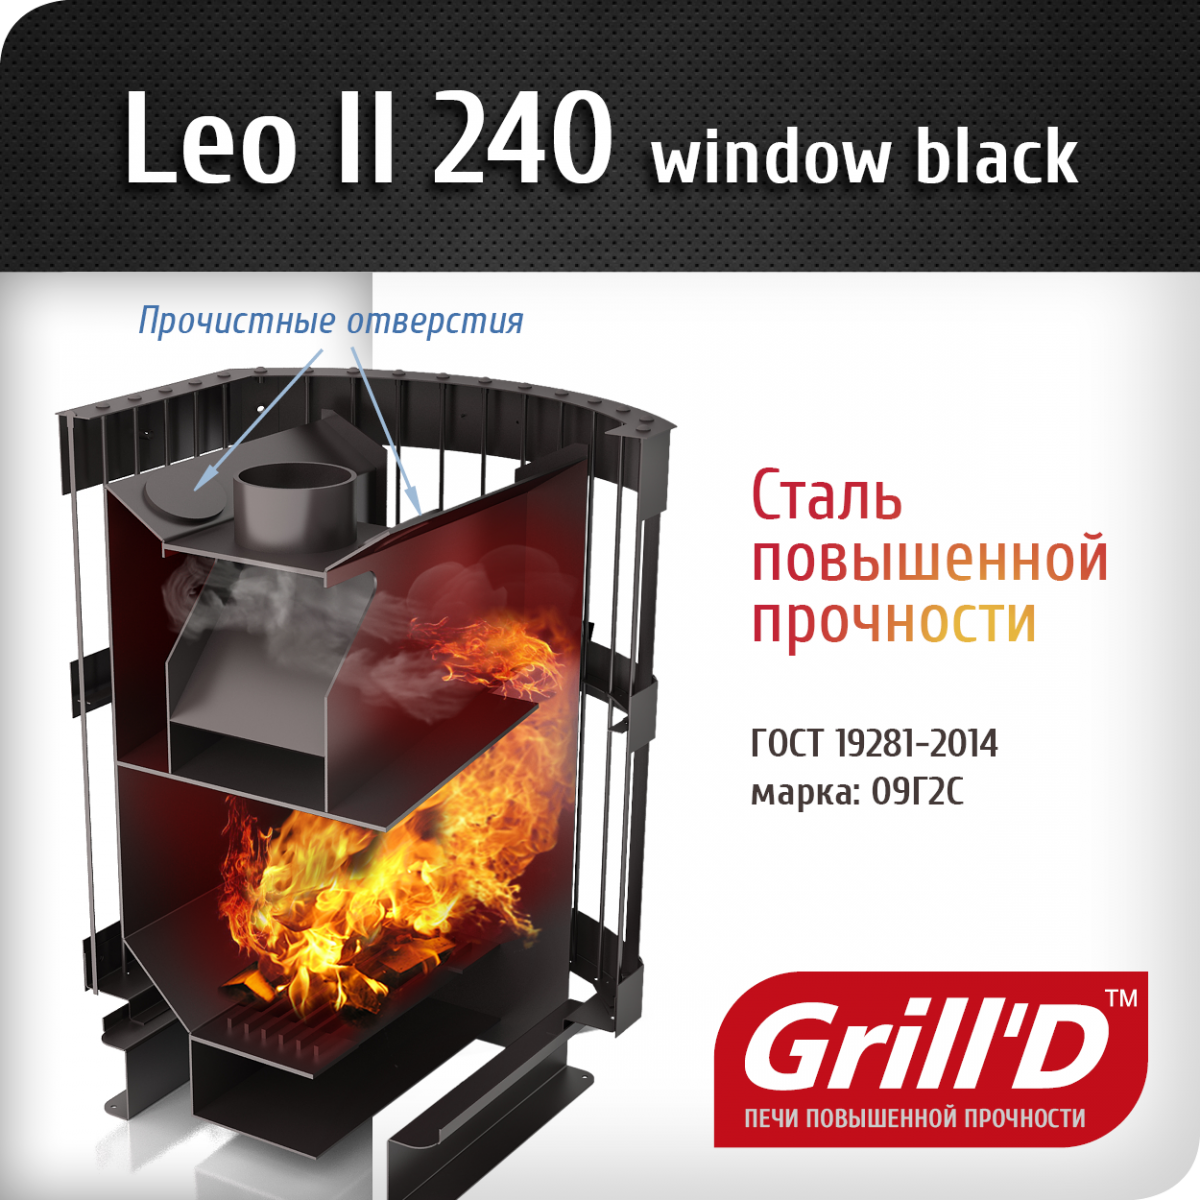 Фото товара Банная печь Grill'D Leo II 240 Window black. Изображение №2